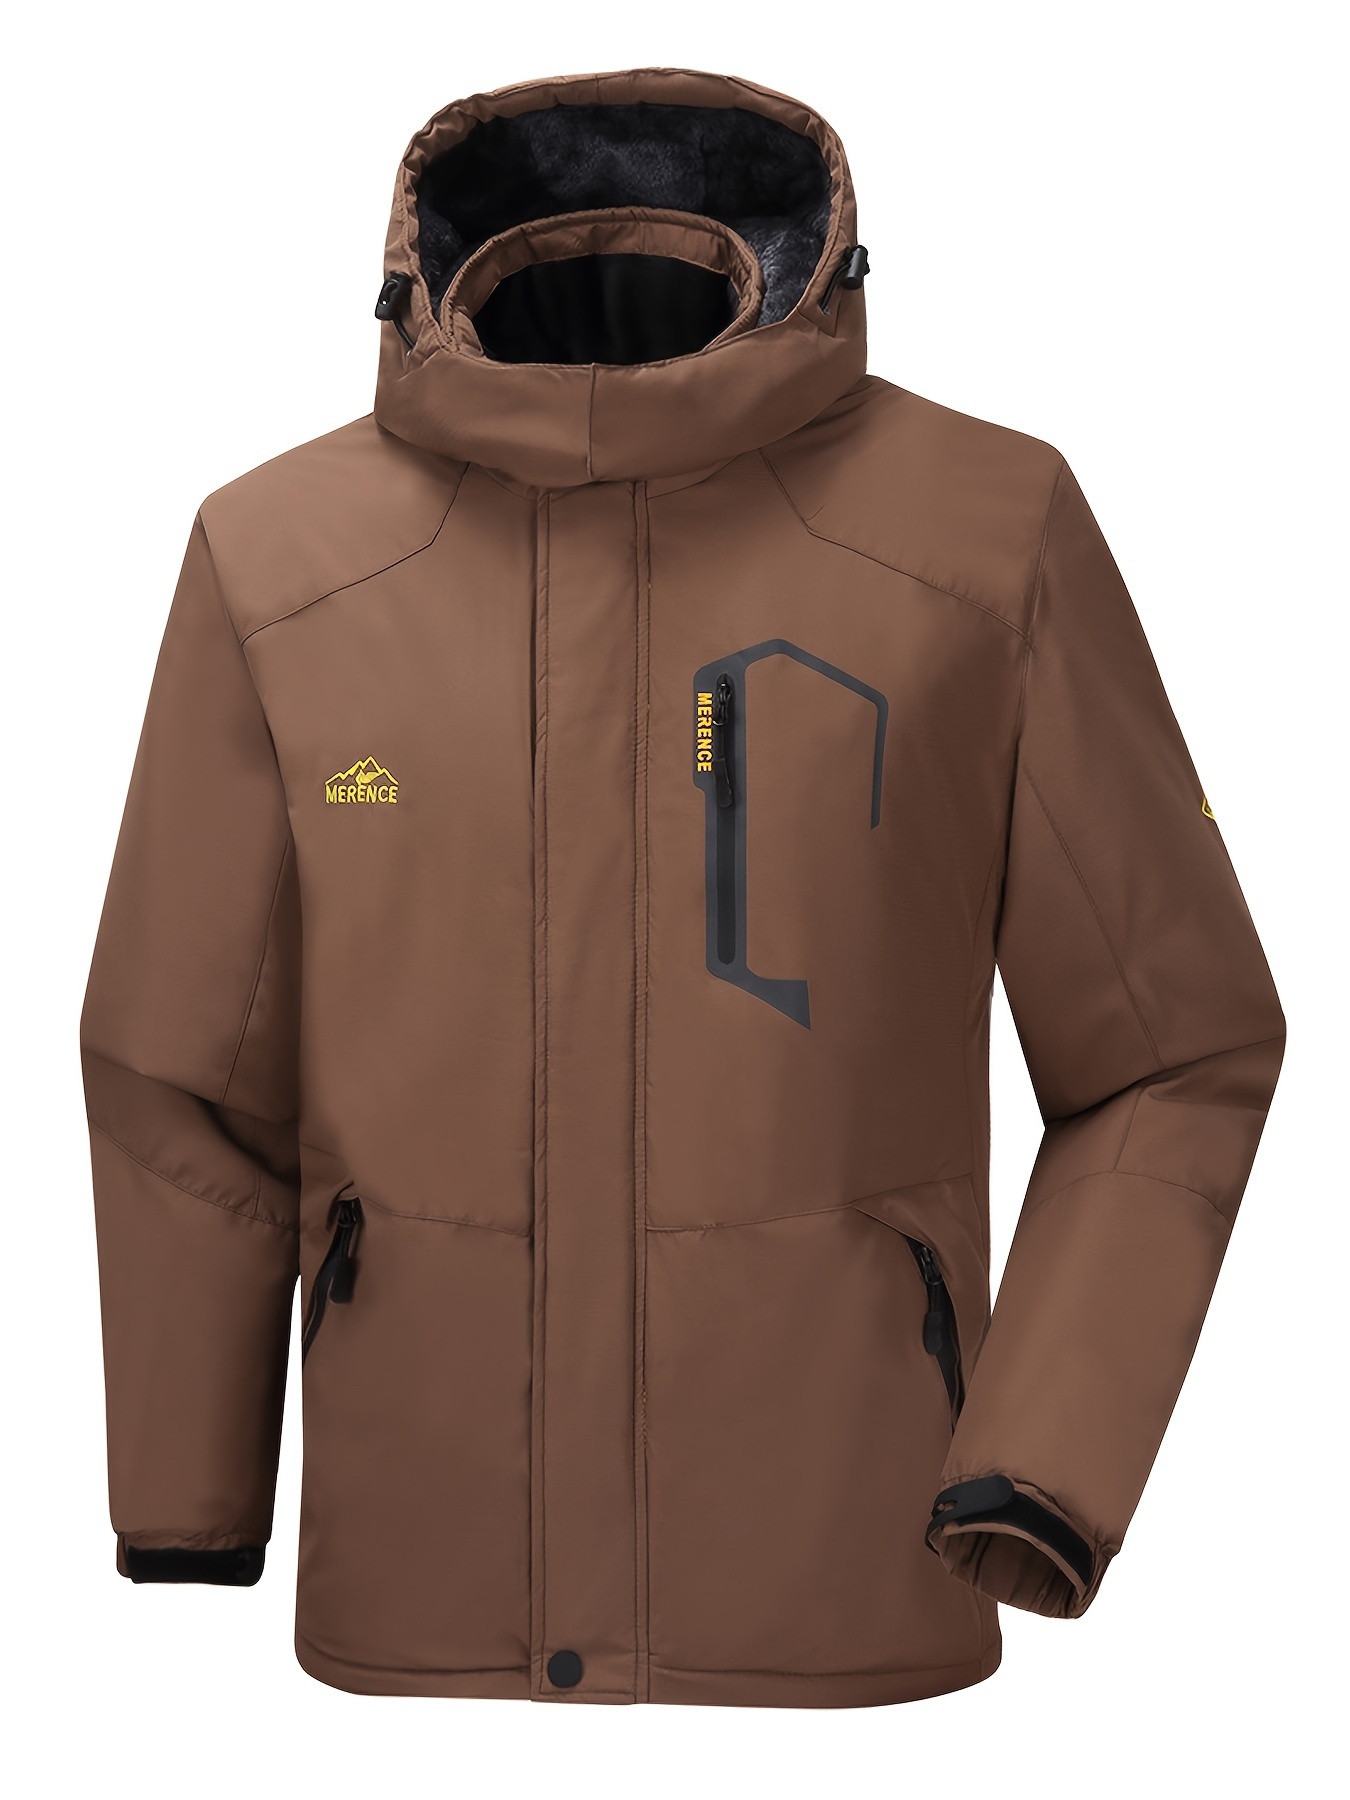 LEEy-world Jackets for Men Men'S Mountain Waterproof Ski Snow Jacket Winter  Windproof Rain Jacket Brown,L